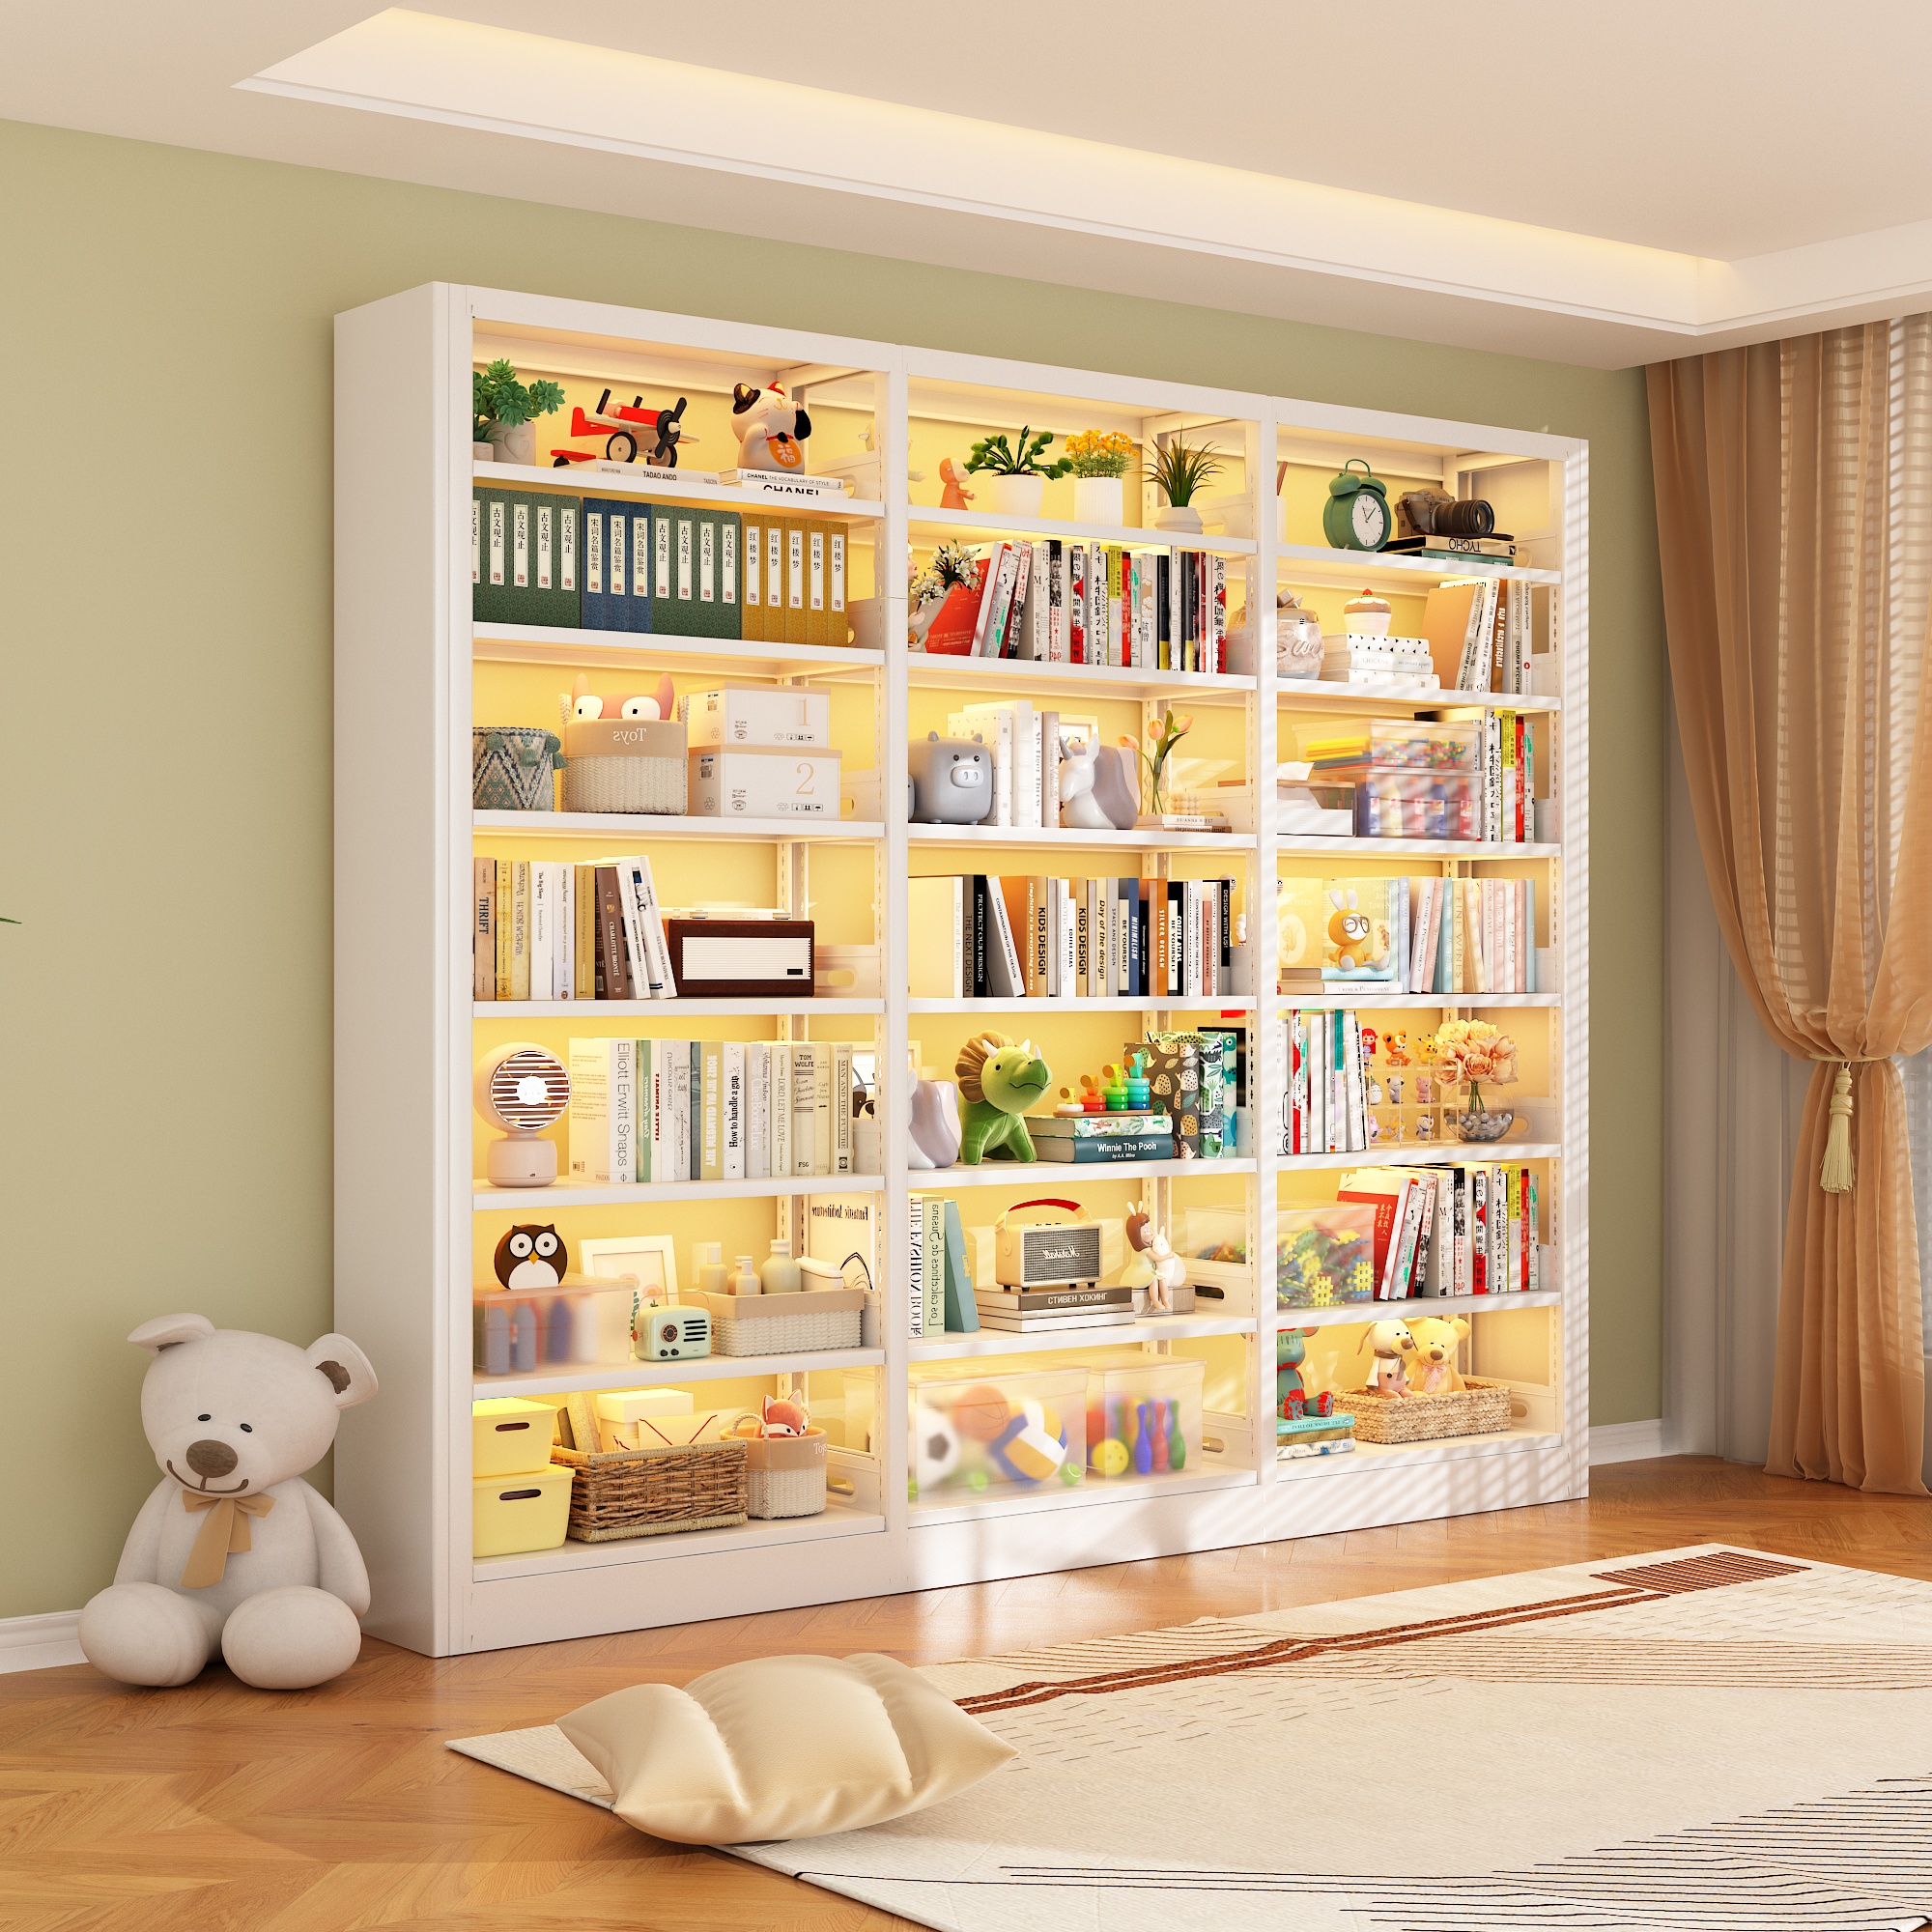 家用钢制书架落地多层置物架书房收纳架铁艺儿童简约一体靠墙书柜